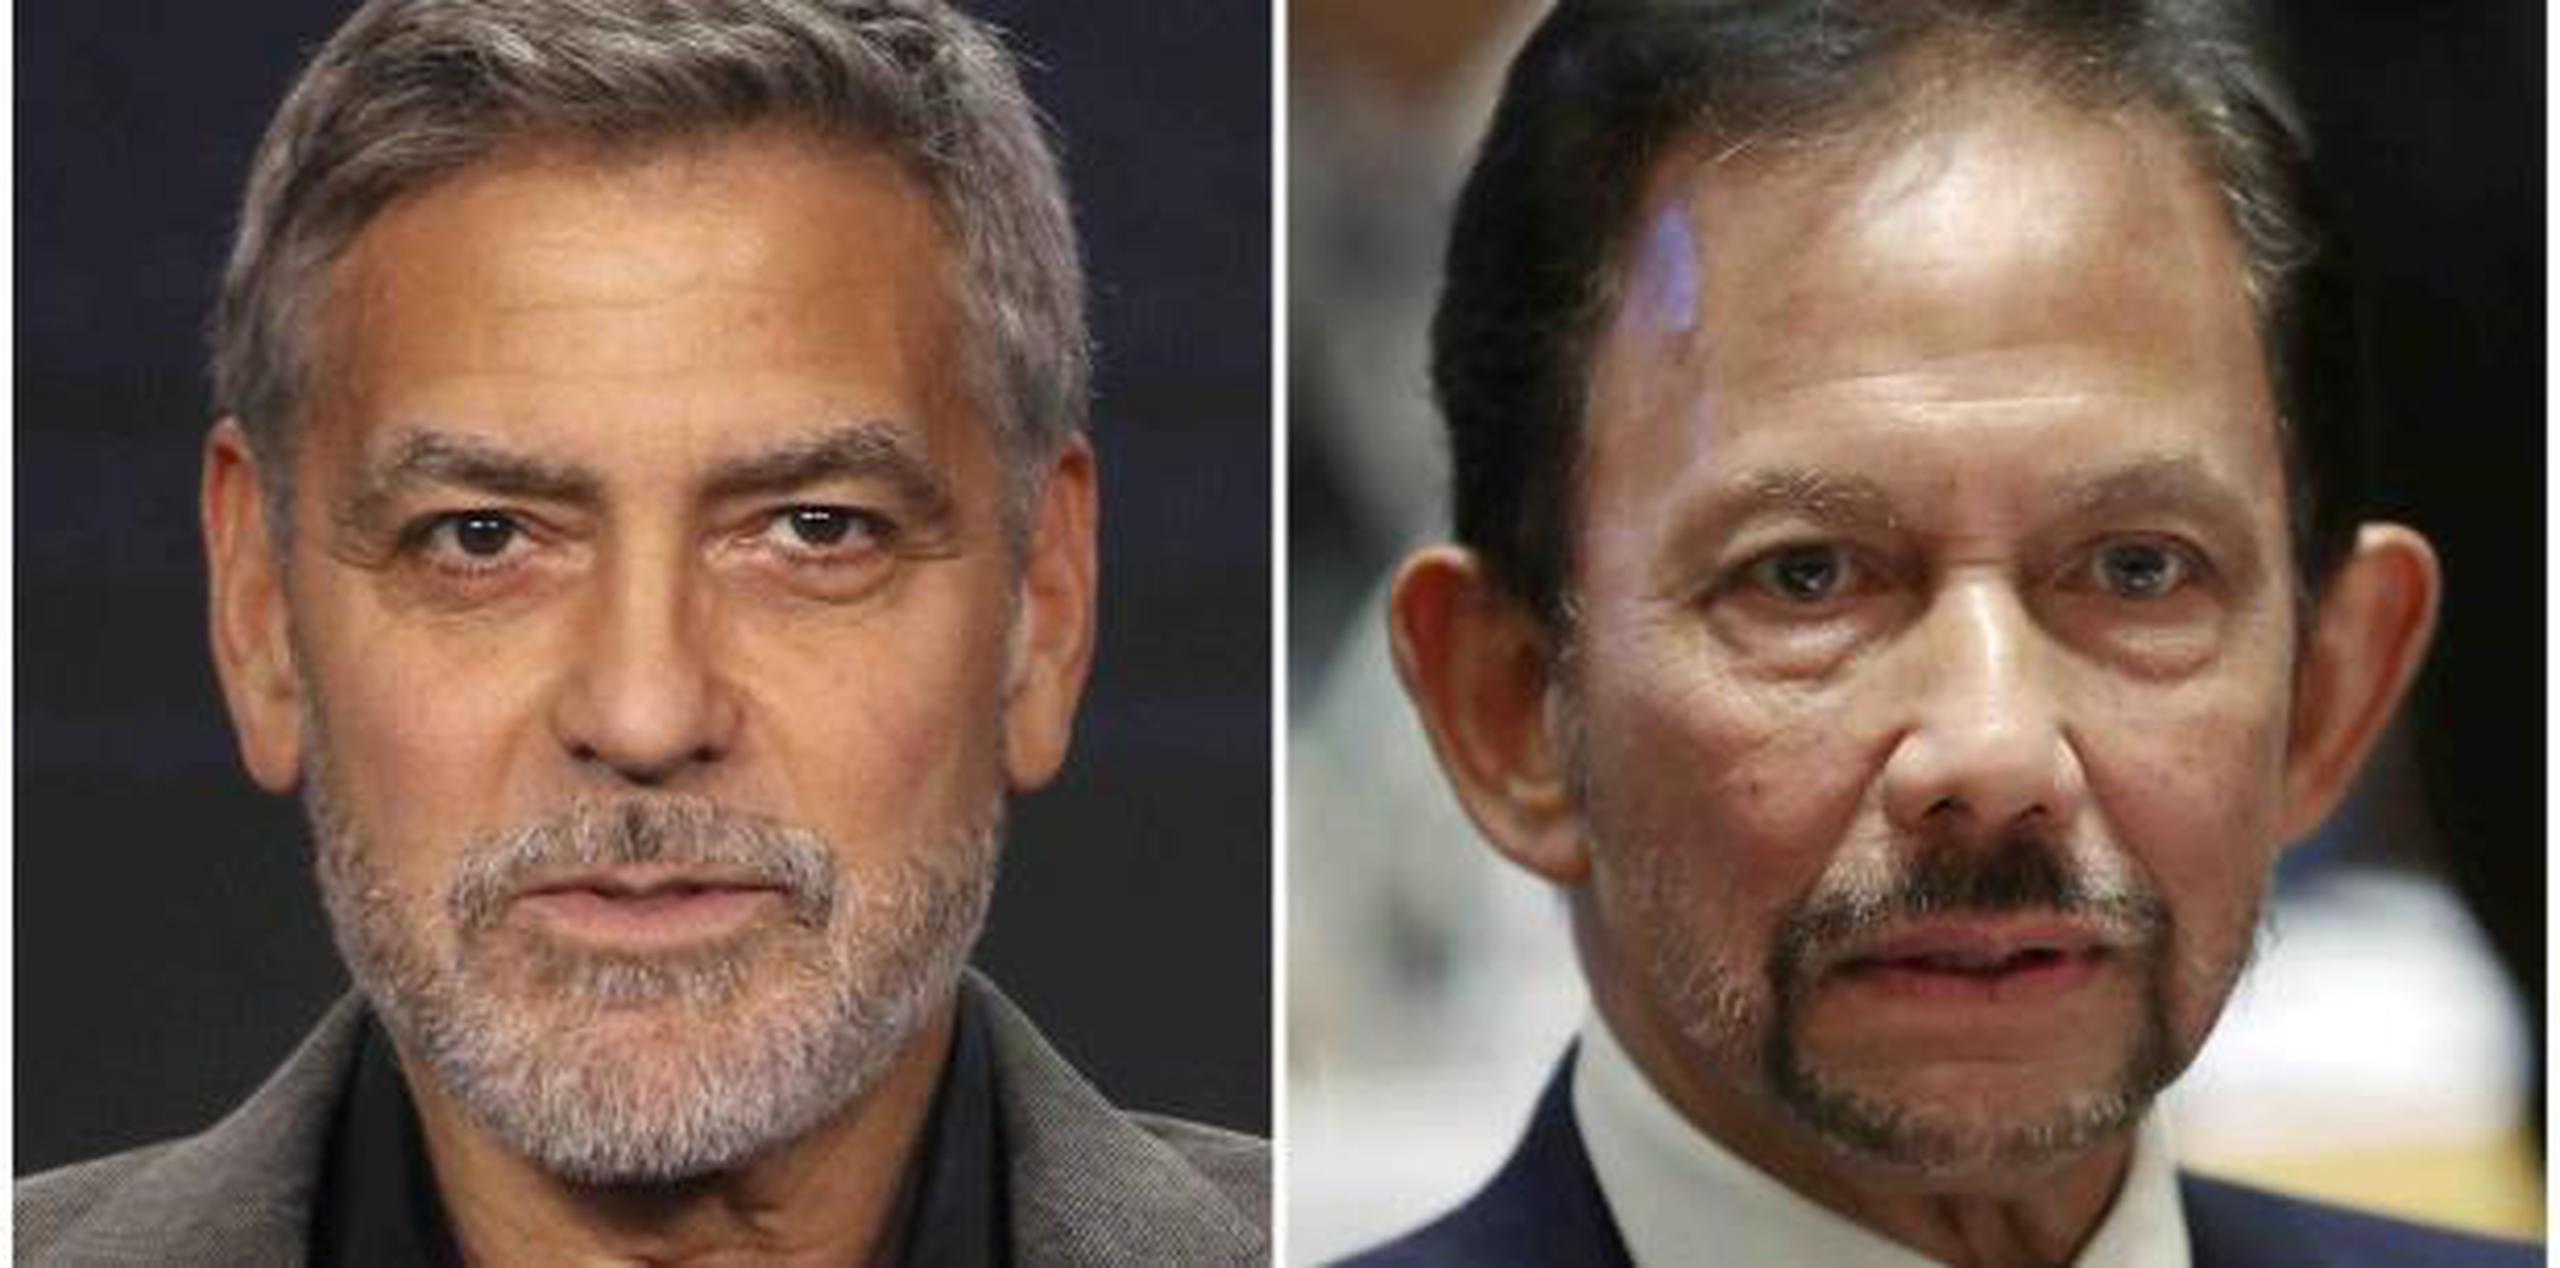 "¿Vamos a ayudar a financiar el asesinato de ciudadanos inocentes?", escribió Clooney sobre la decisión del sultán Hassanal Bolkiah. (AP)

